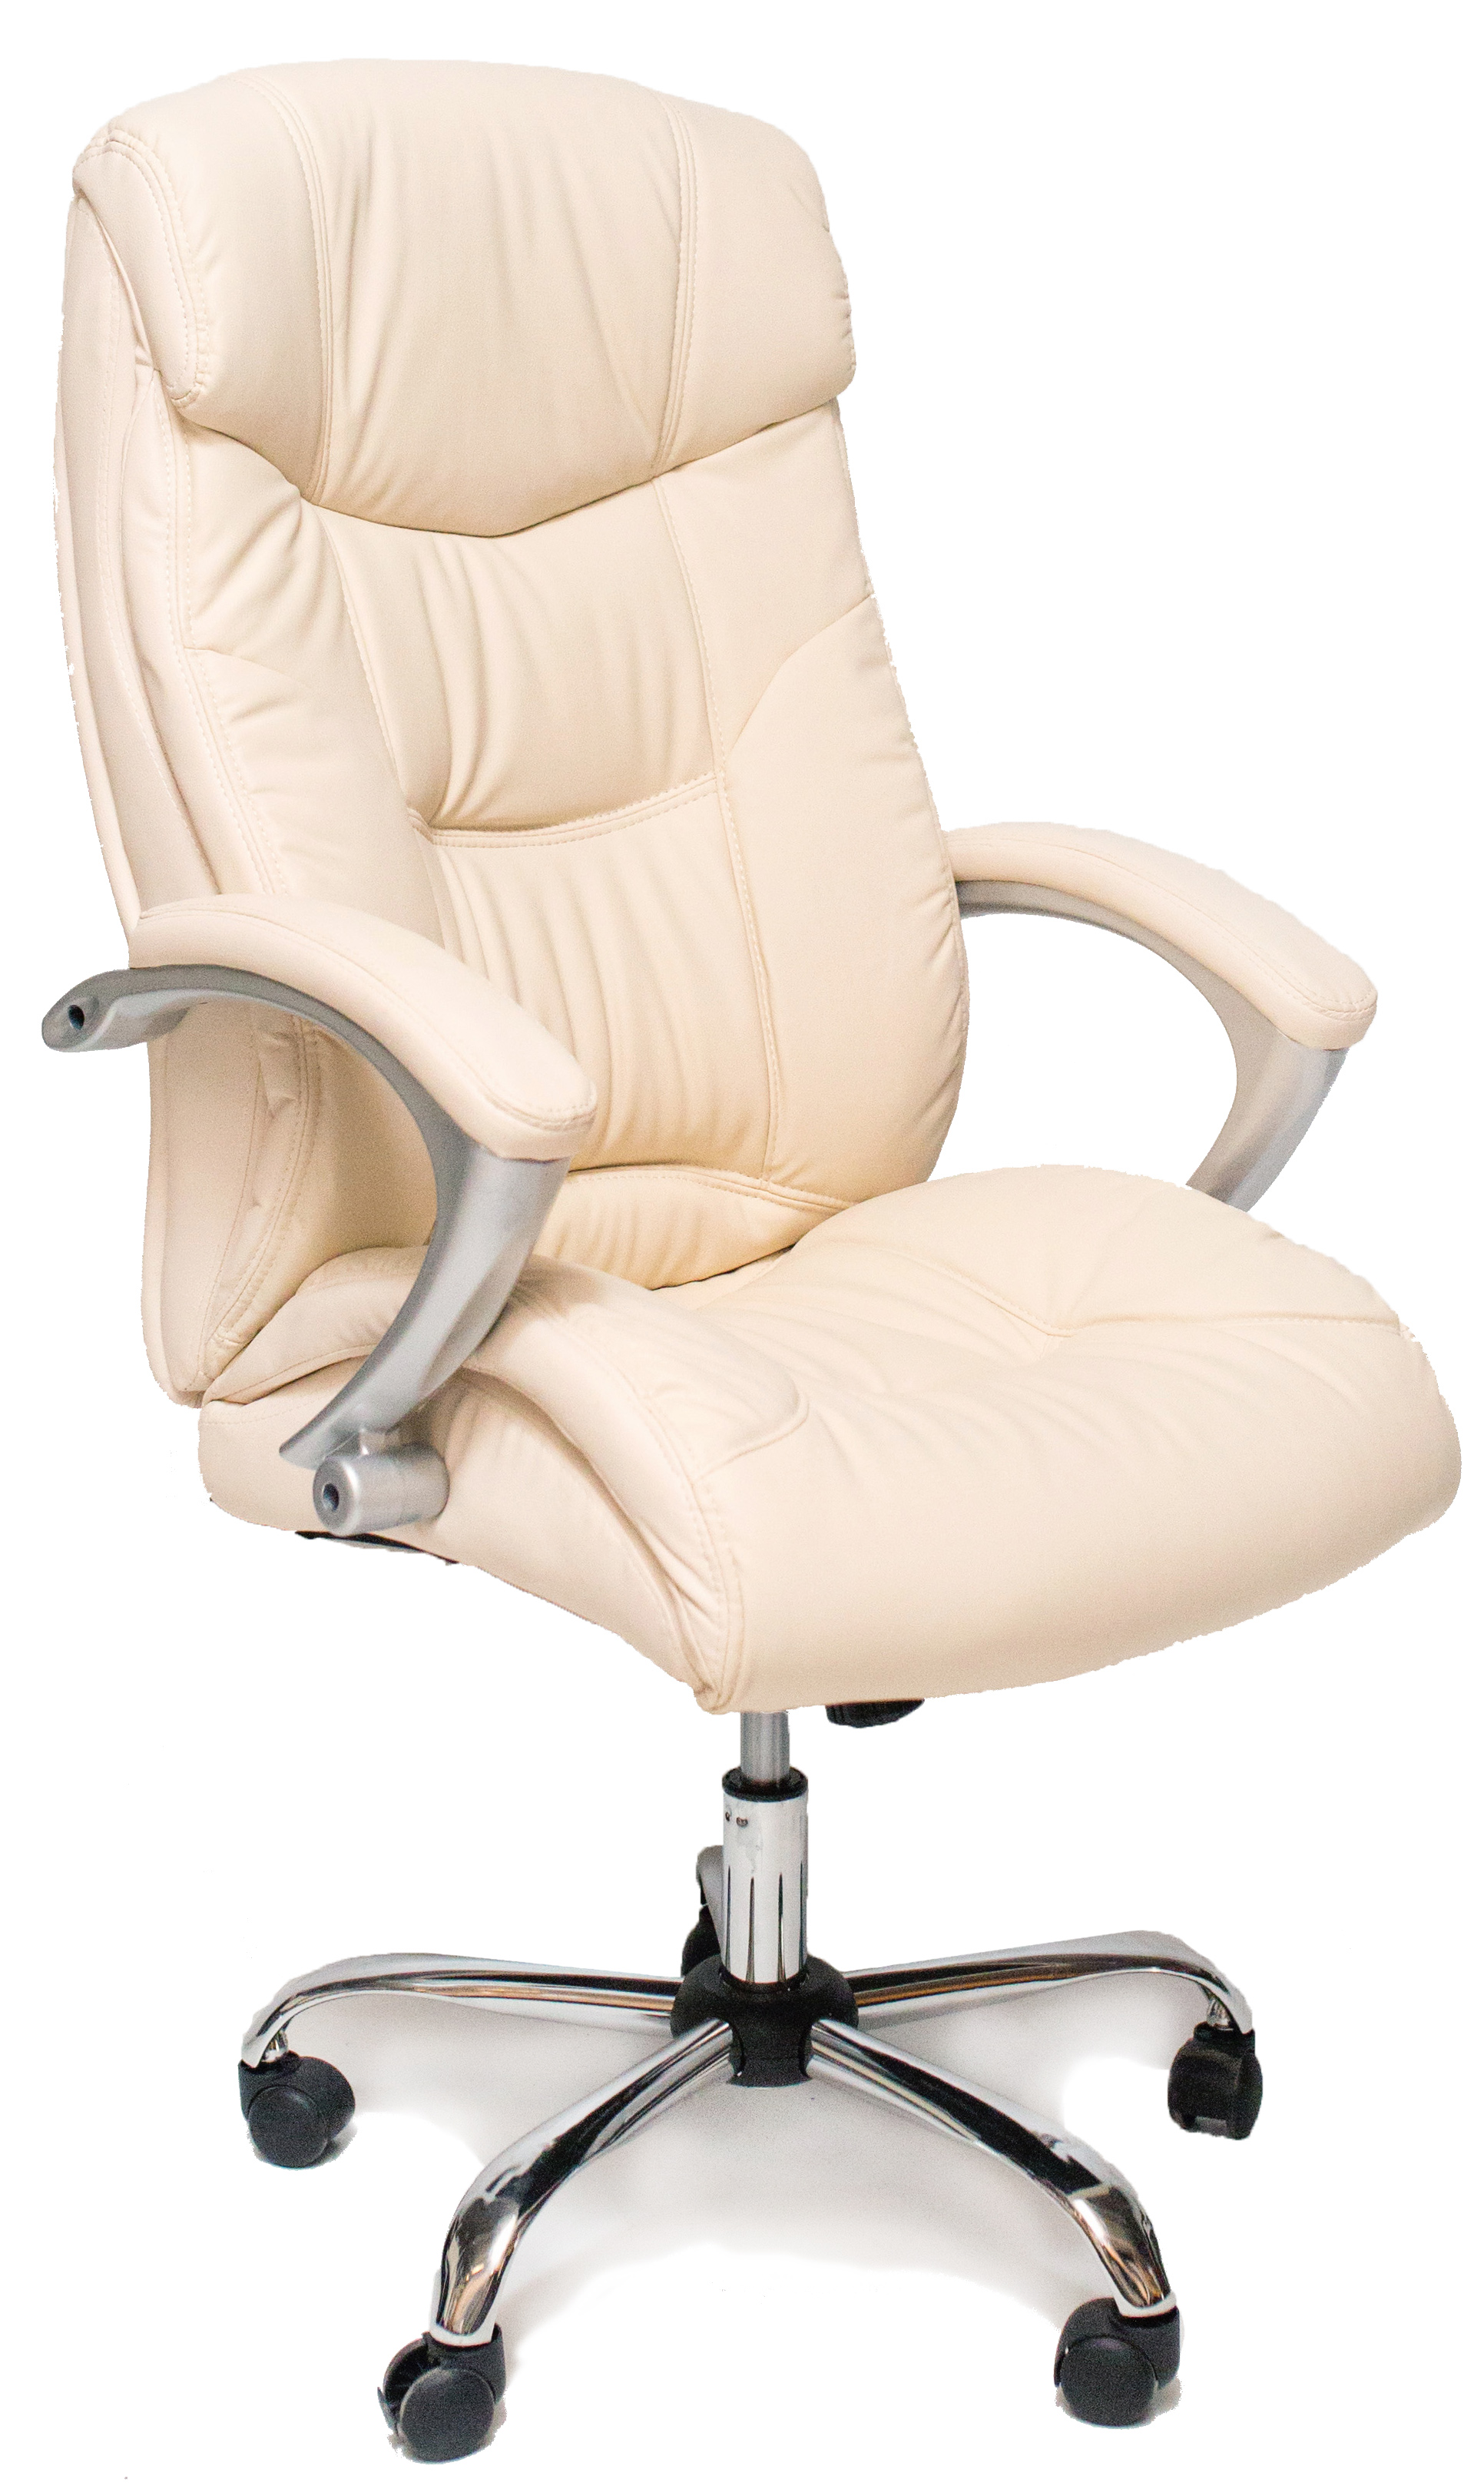 Офисное кресло Deco BX-3165 Beige,  по выгодной цене с доставкой .